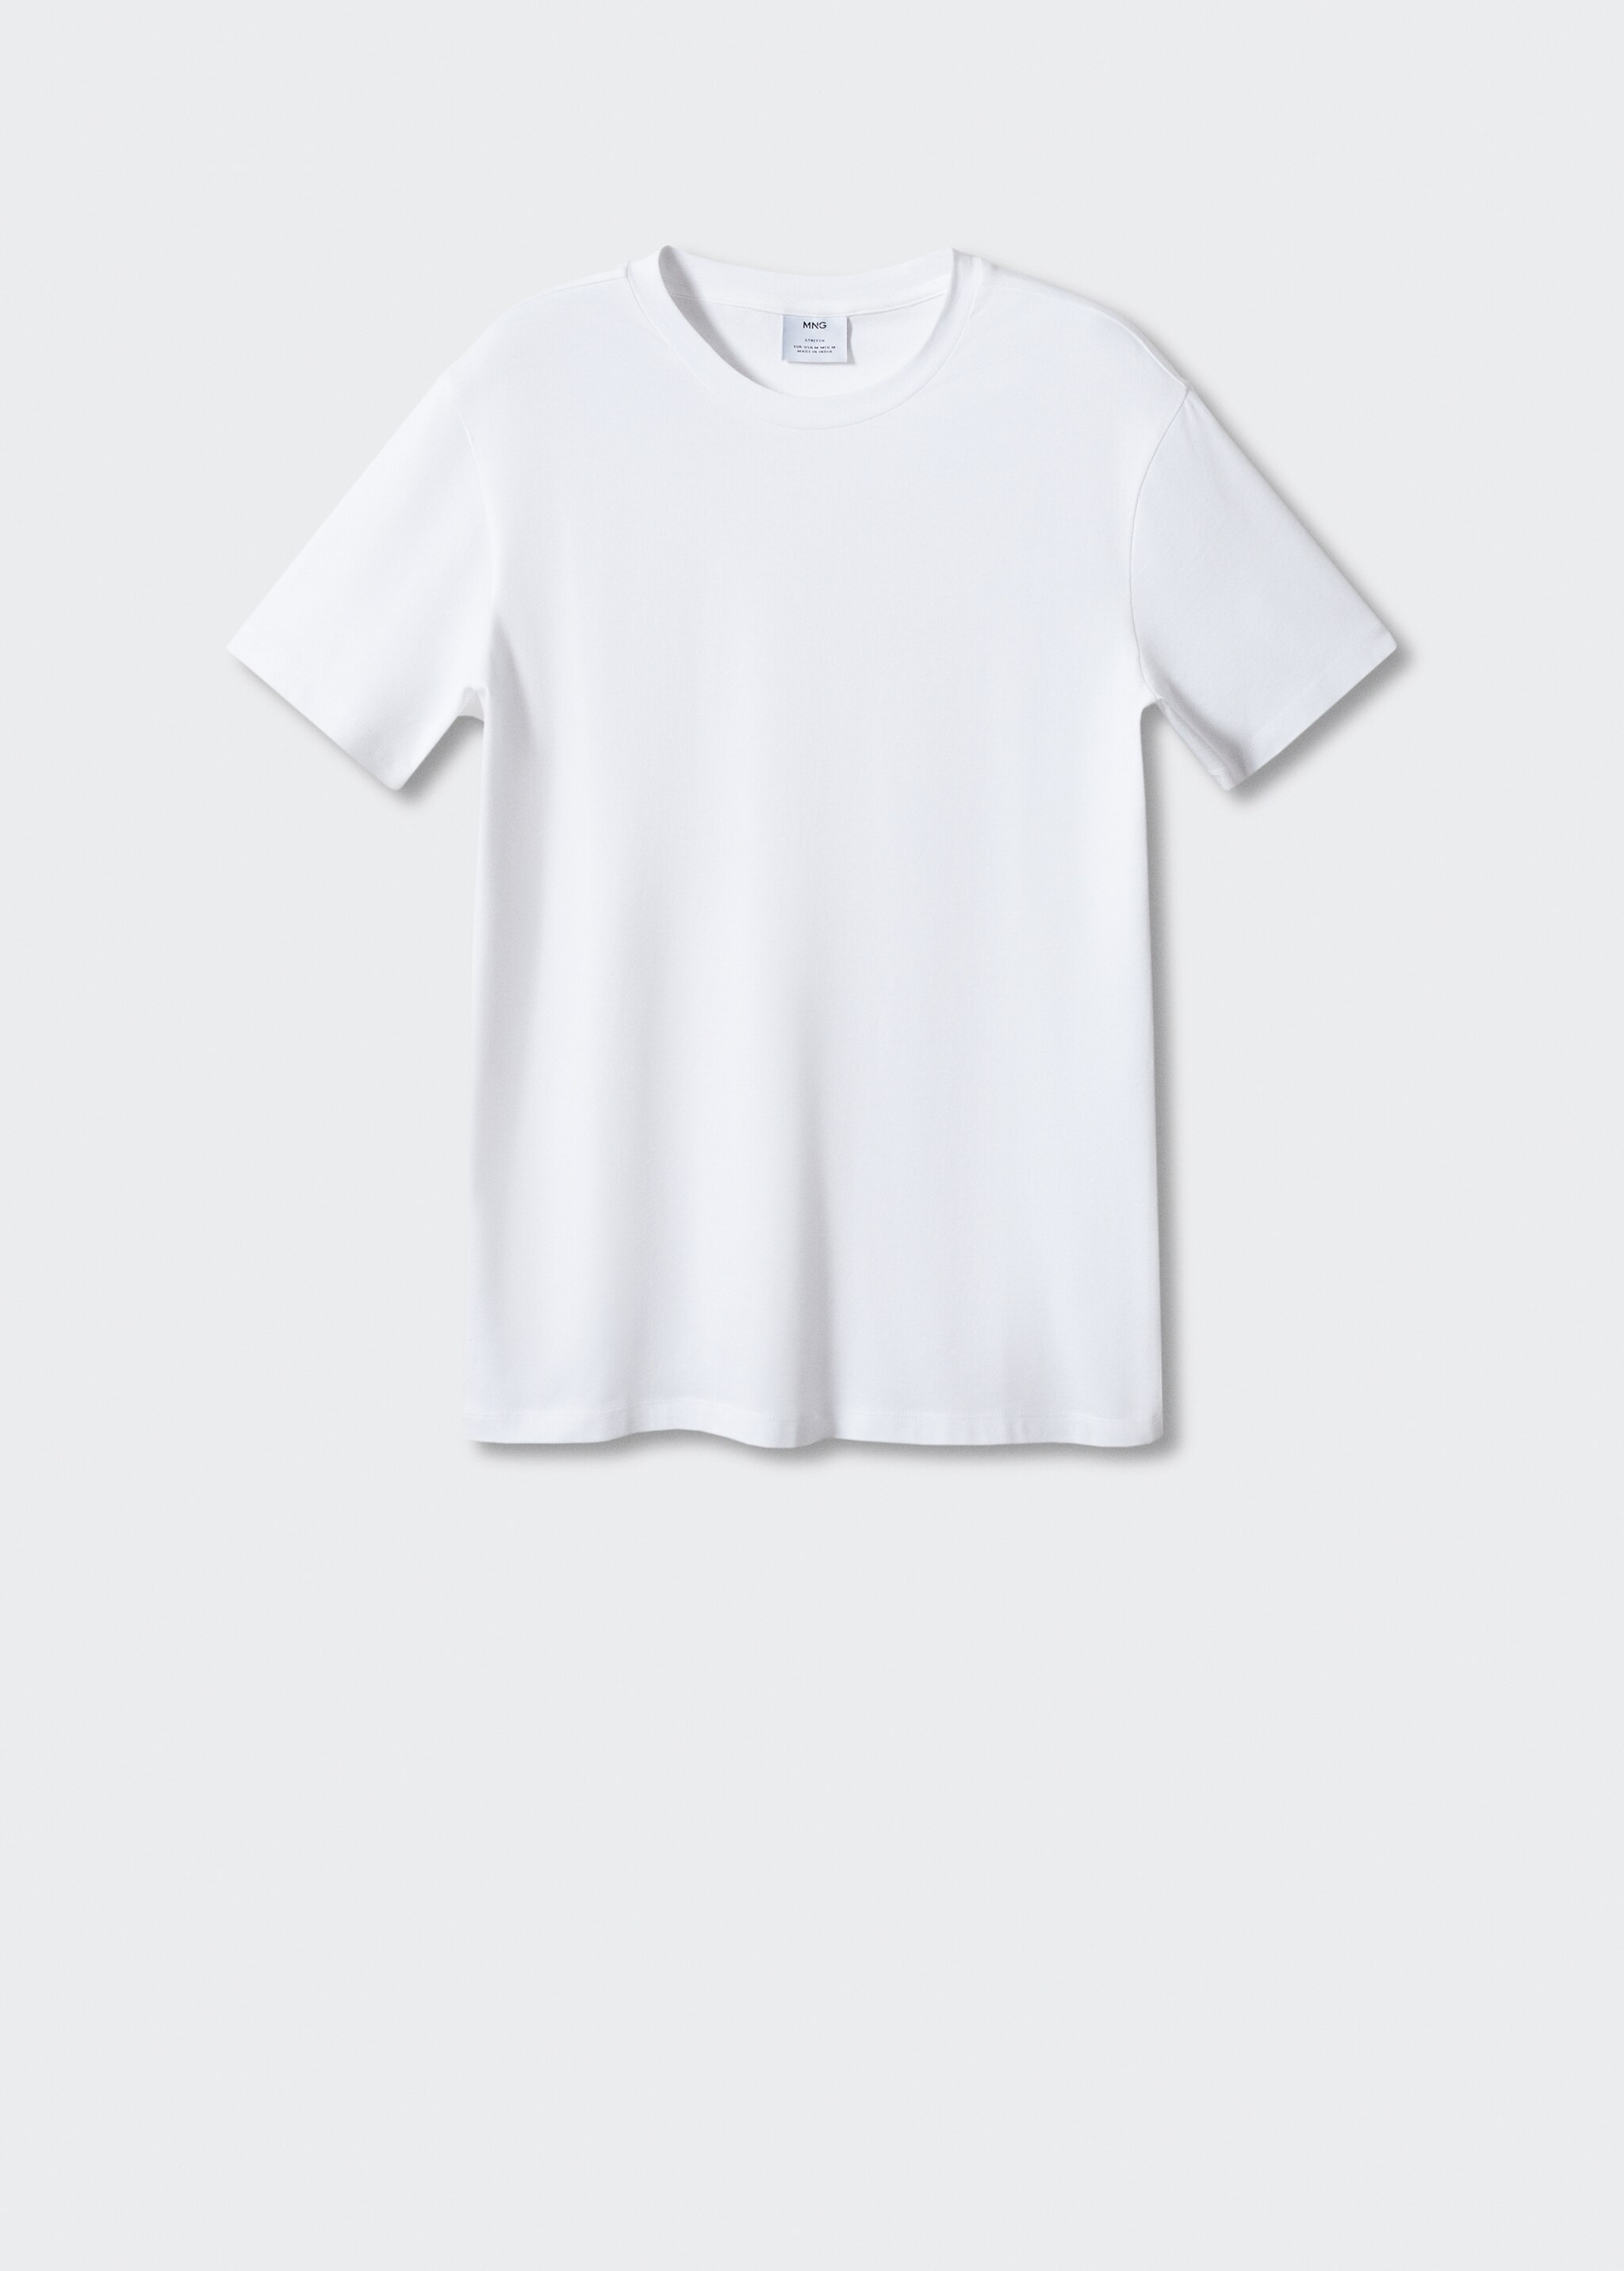 Camiseta algodón stretch - Artículo sin modelo